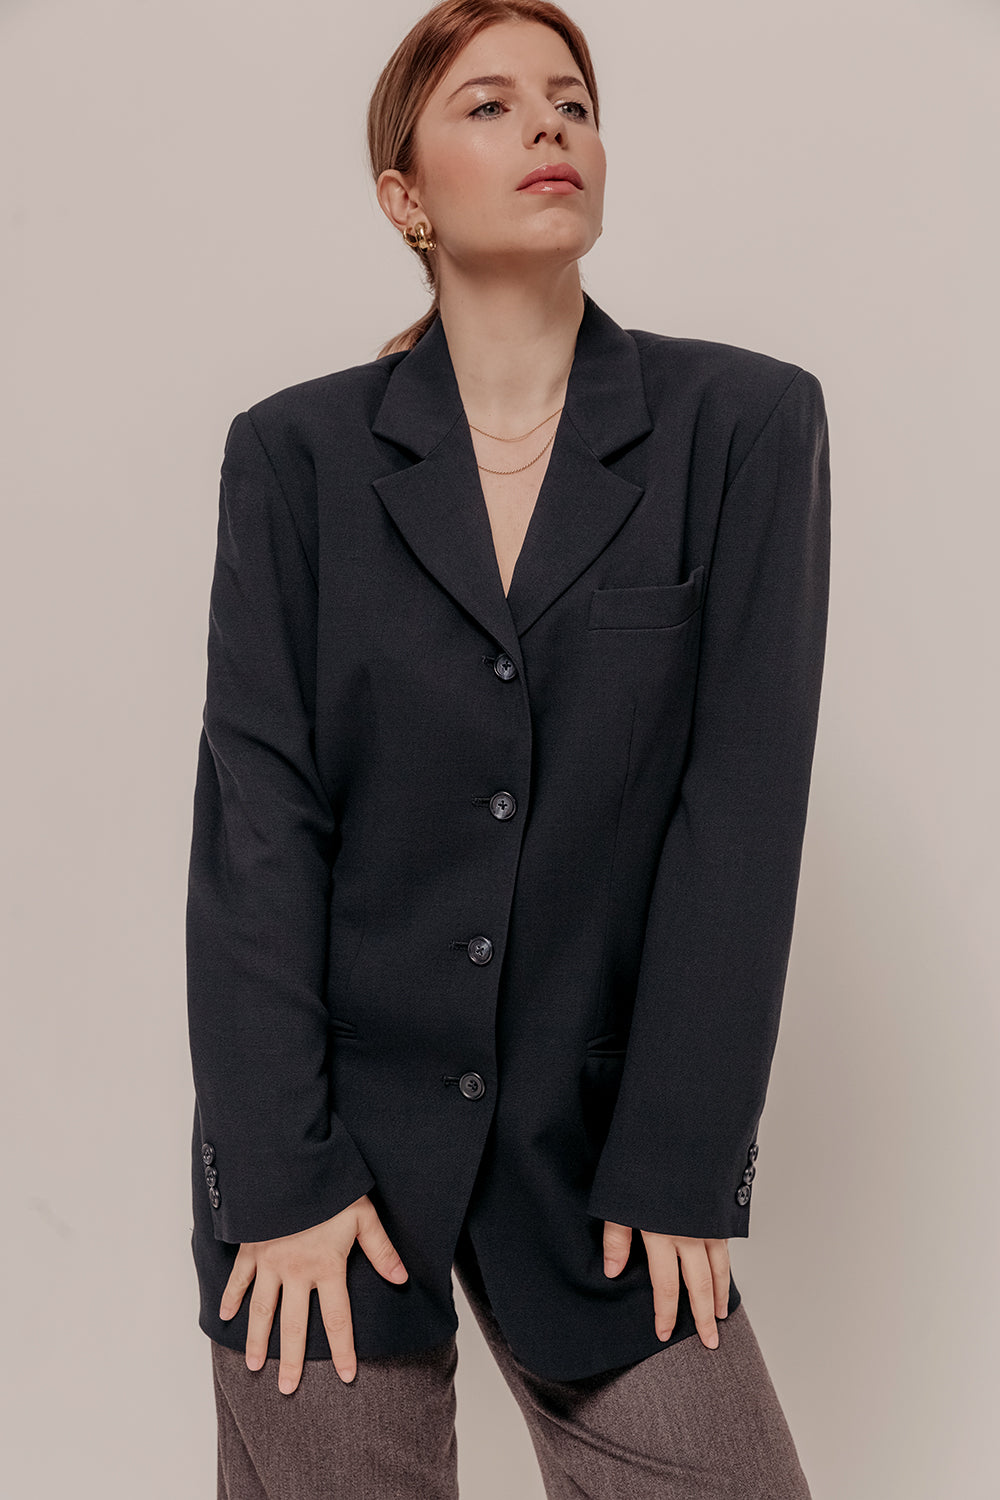 DKNY 100% Wool Classic Black Blazer Size 8